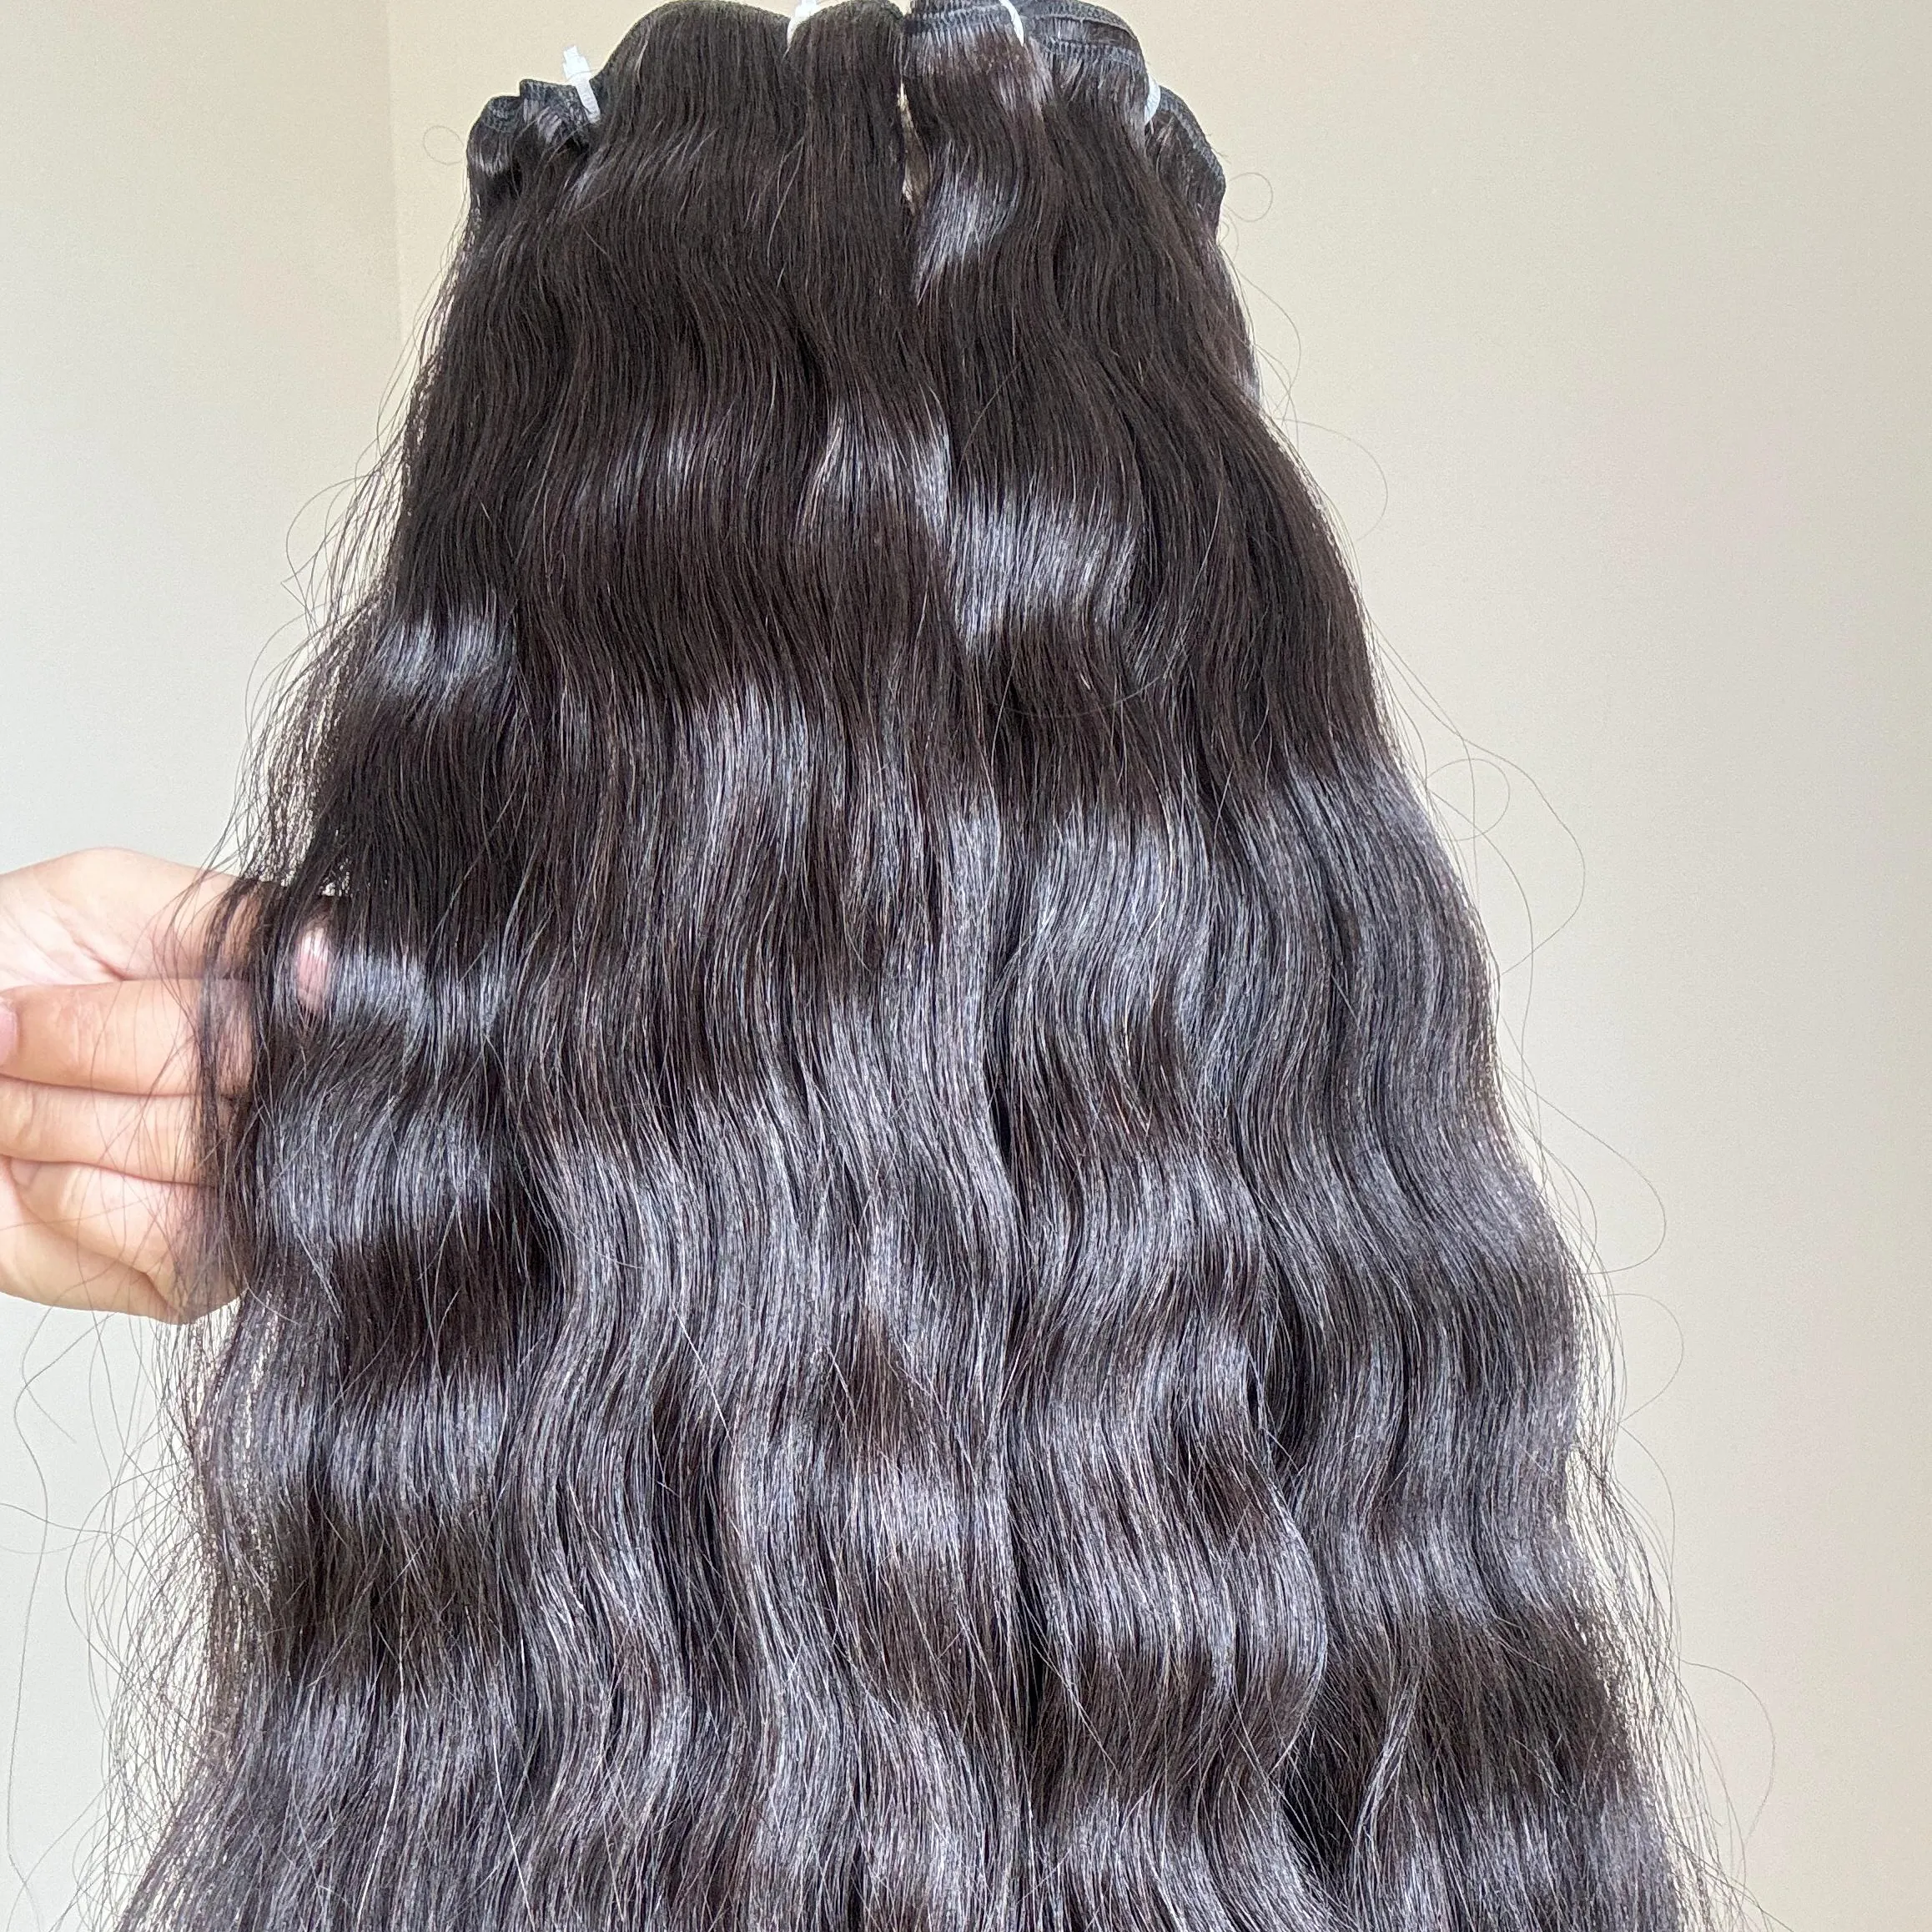 Pabrik murah 6-32 inci bundel rambut manusia keriting pemanjangan rambut anyaman Vietnam